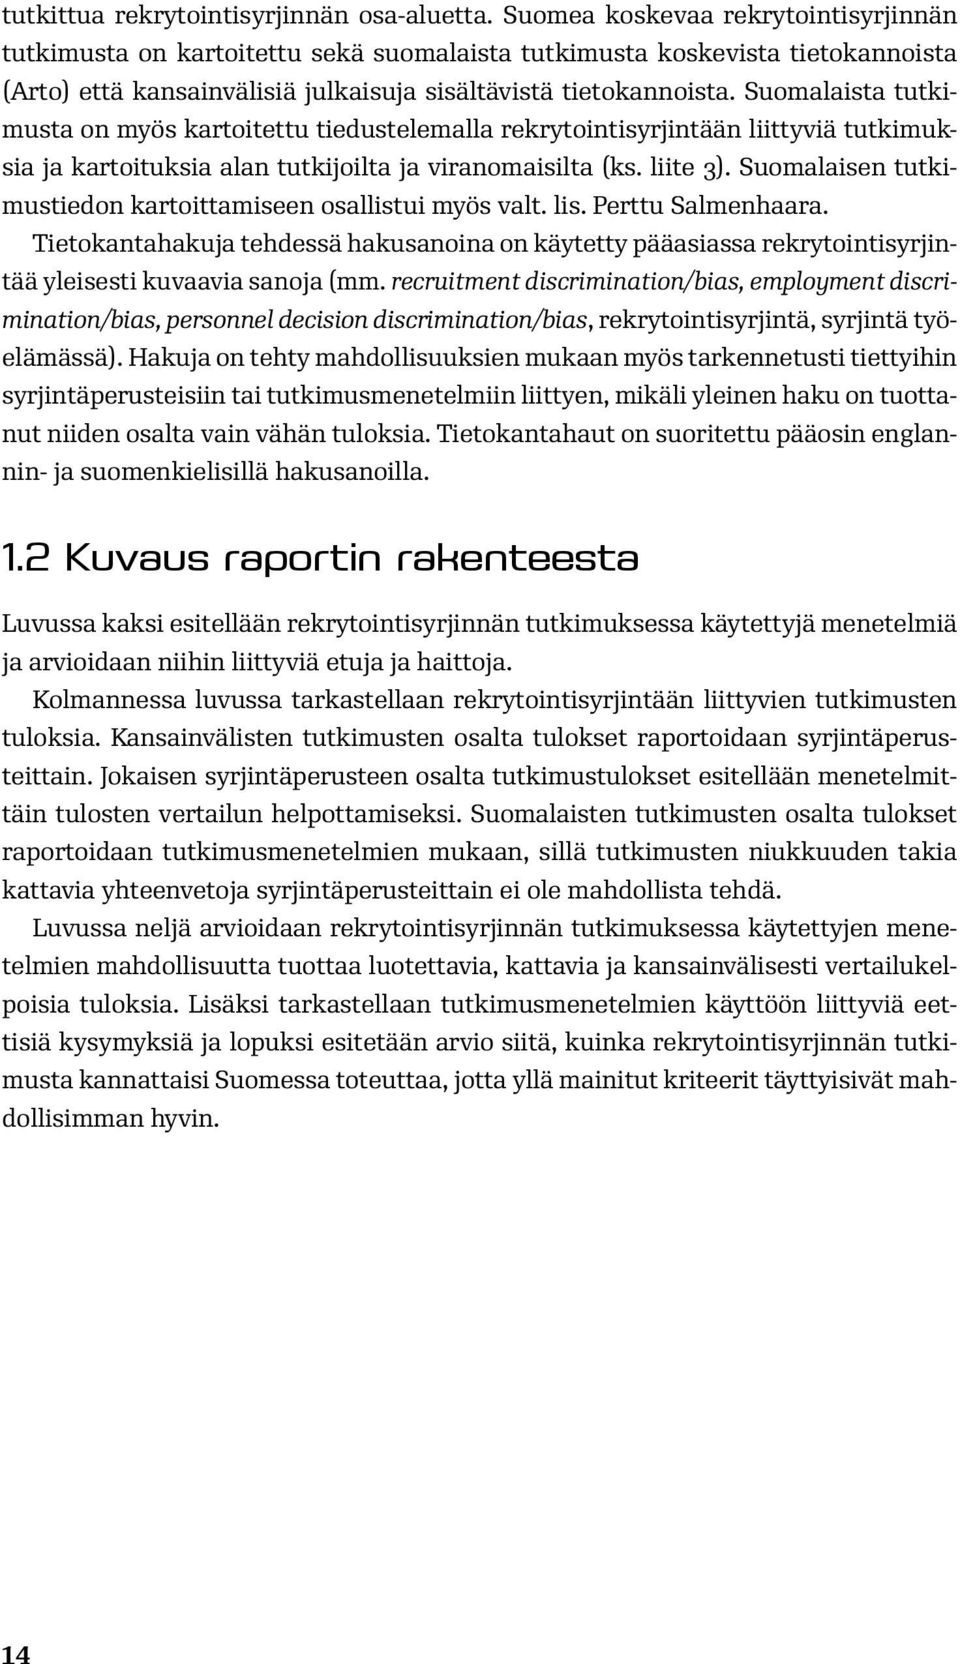 Suomalaista tutkimusta on myös kartoitettu tiedustelemalla rekrytointisyrjintään liittyviä tutkimuksia ja kartoituksia alan tutkijoilta ja viranomaisilta (ks. liite 3).